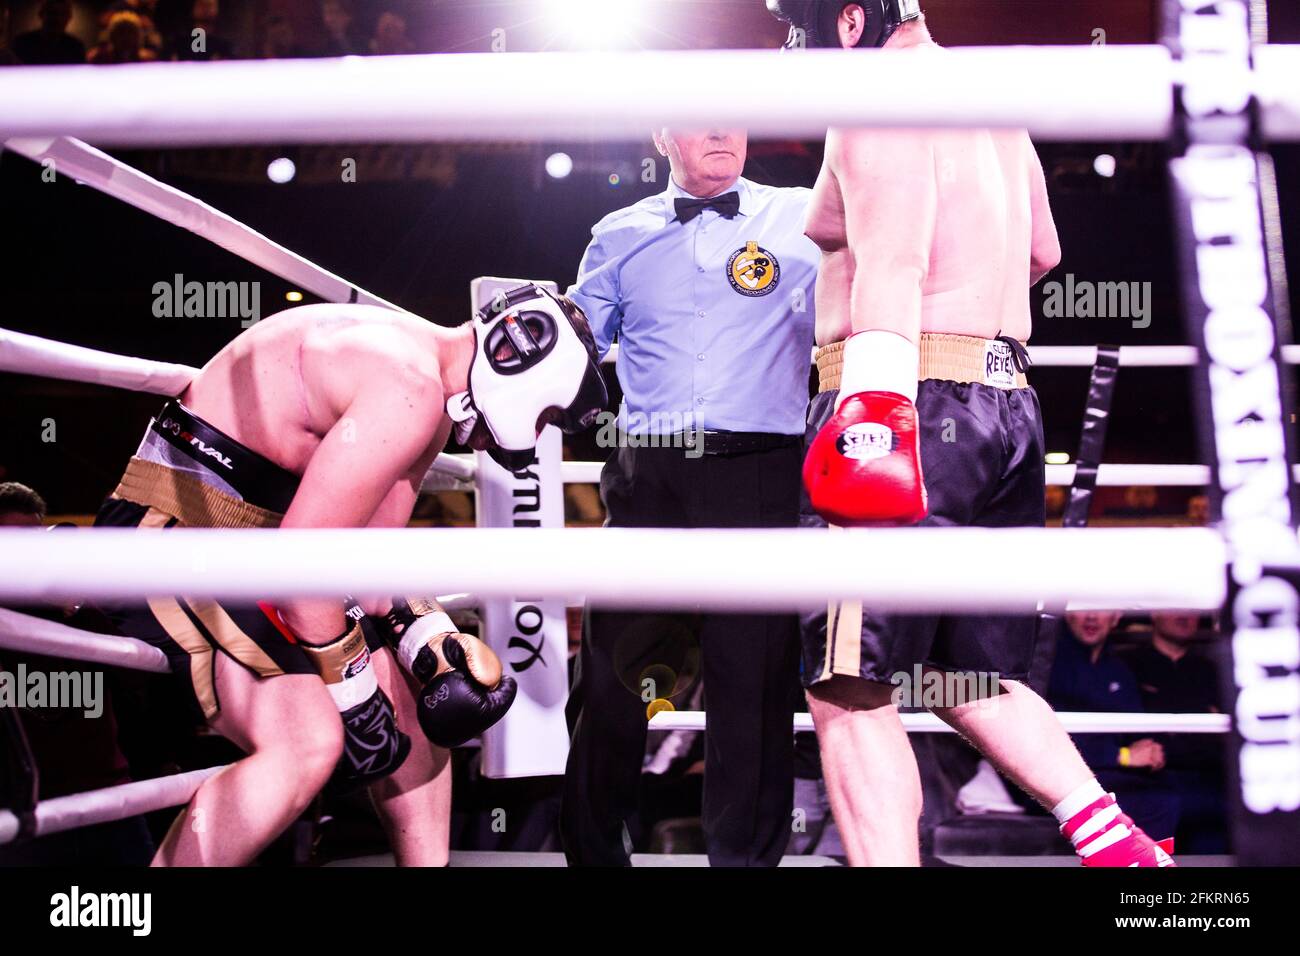 Boxschiedsrichter stoppt den Kampf, während einer der Boxer nach einem schweren Body Punch nach Luft schlingt, die während des White Collars Events in Freedom schmerzt Stockfoto